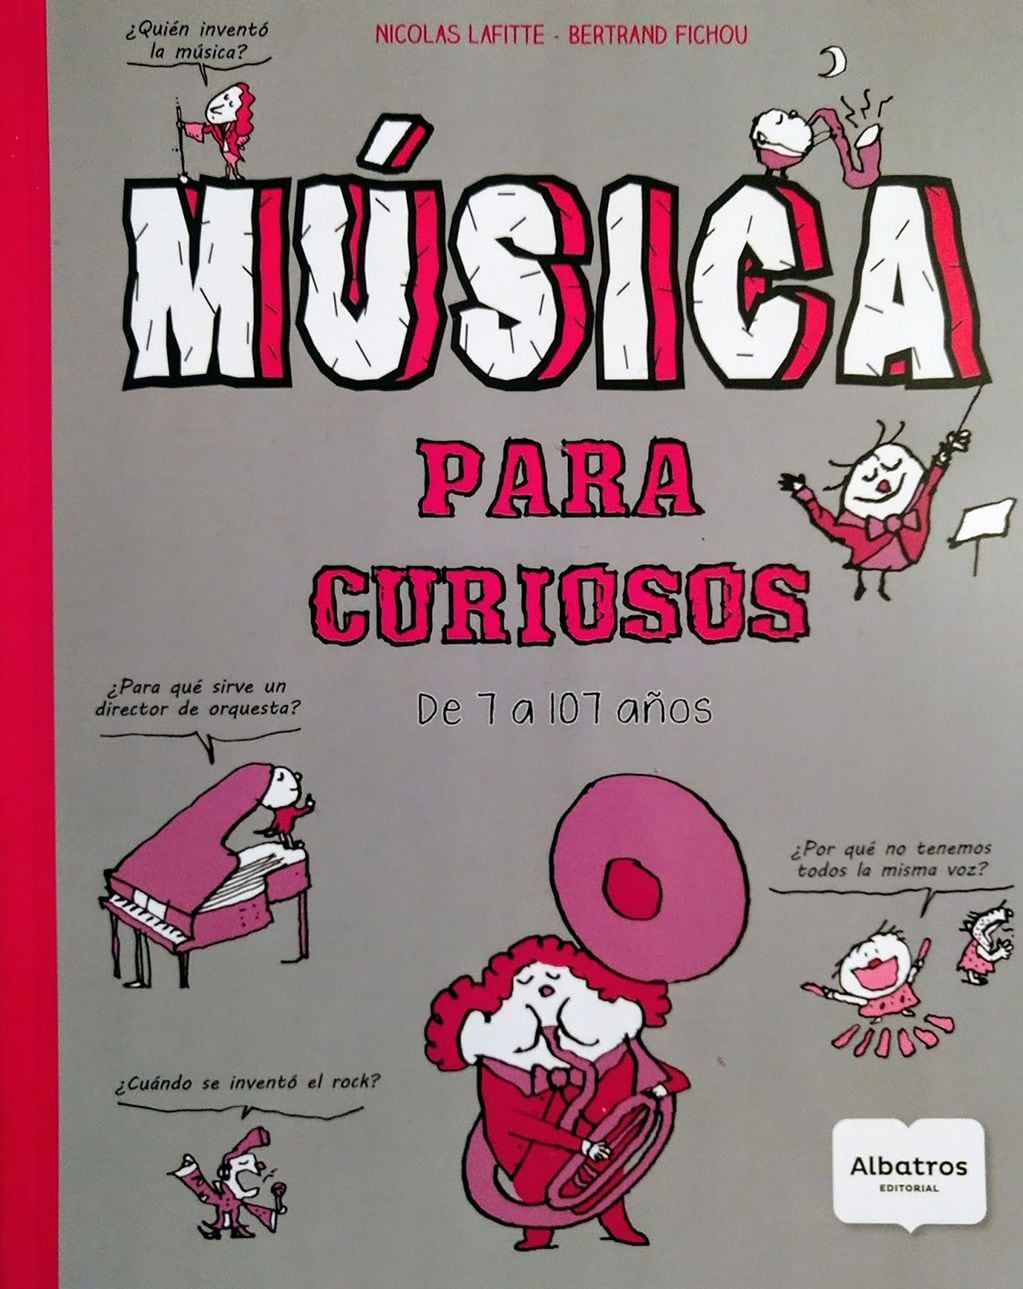 Un divertido libro de iniciación musical escrito por Nicolás Lafitte y Bertrand Fichou y dedicado a todos los amantes de la música, de 7 a 107 años, que quieren aprender sobre diferentes estilos, instrumentos, orquestas, compositores y cantantes.